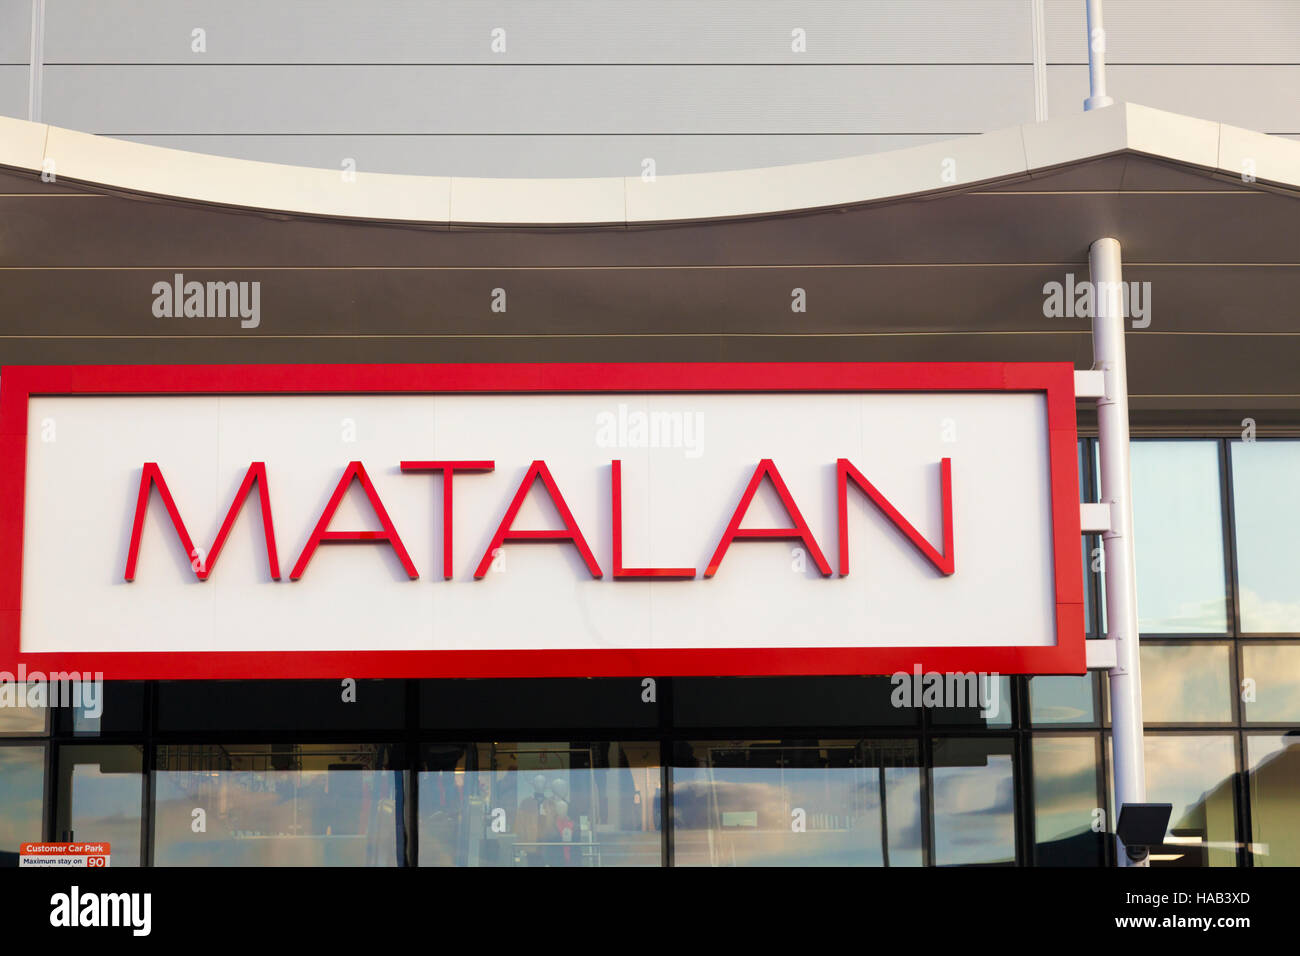 Shop sign, Matalan, London, UK Stock Photo